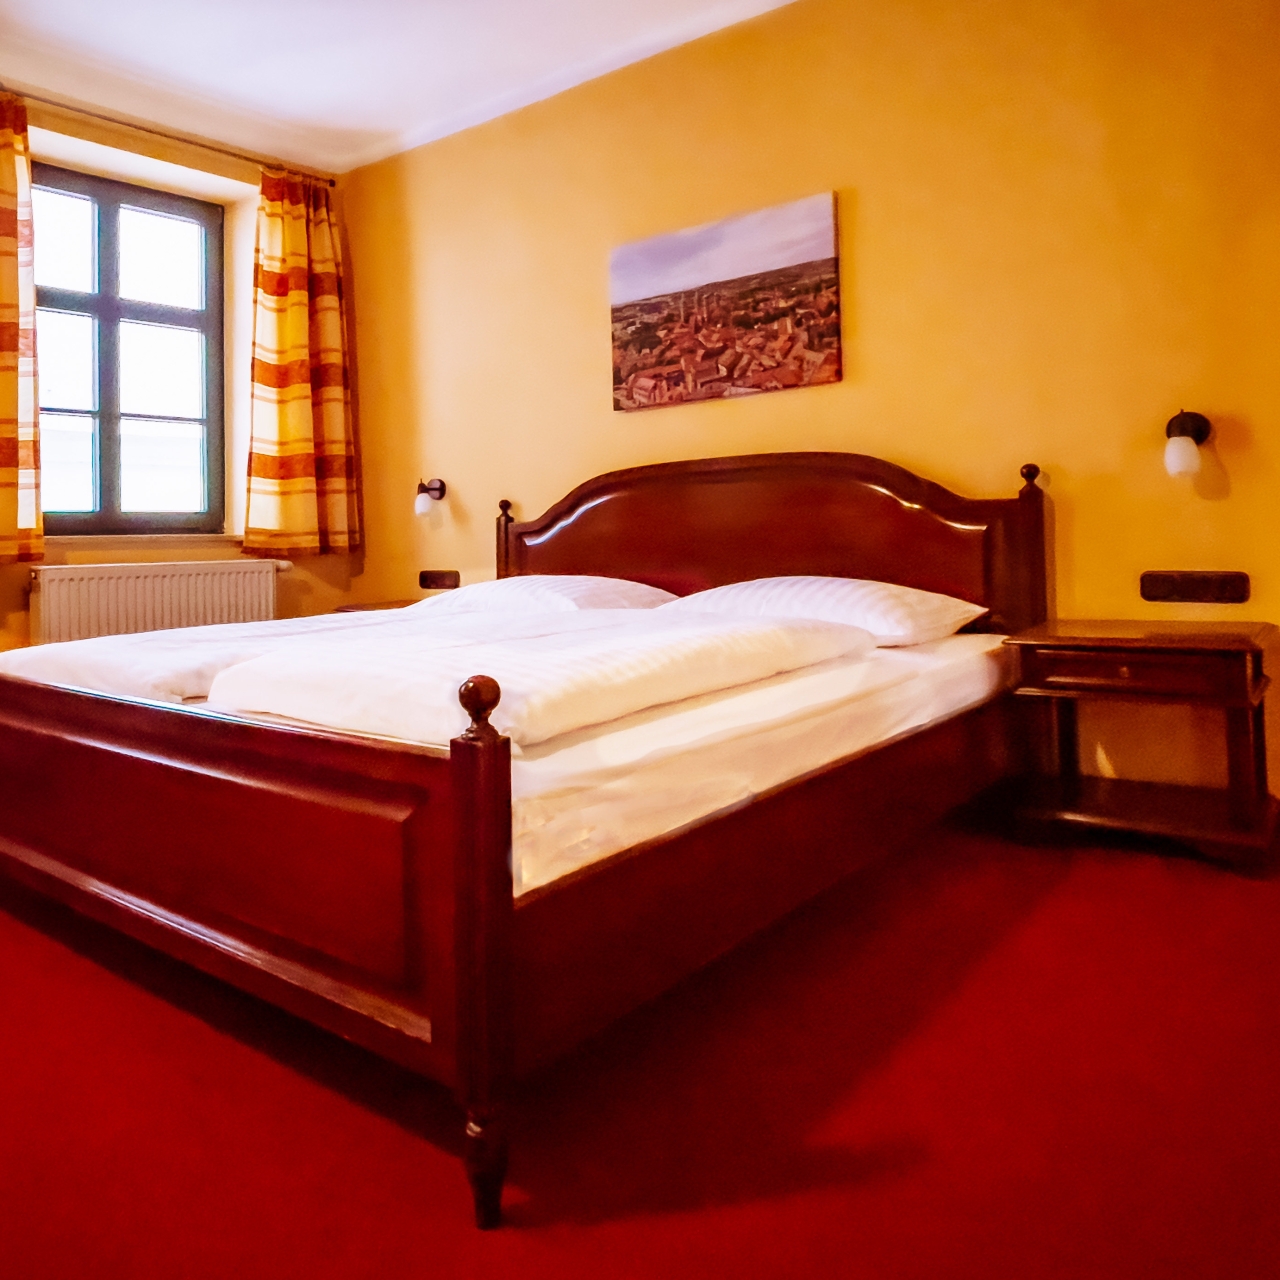 Hotel Braugasthaus Naumburg bei HRS günstig buchen